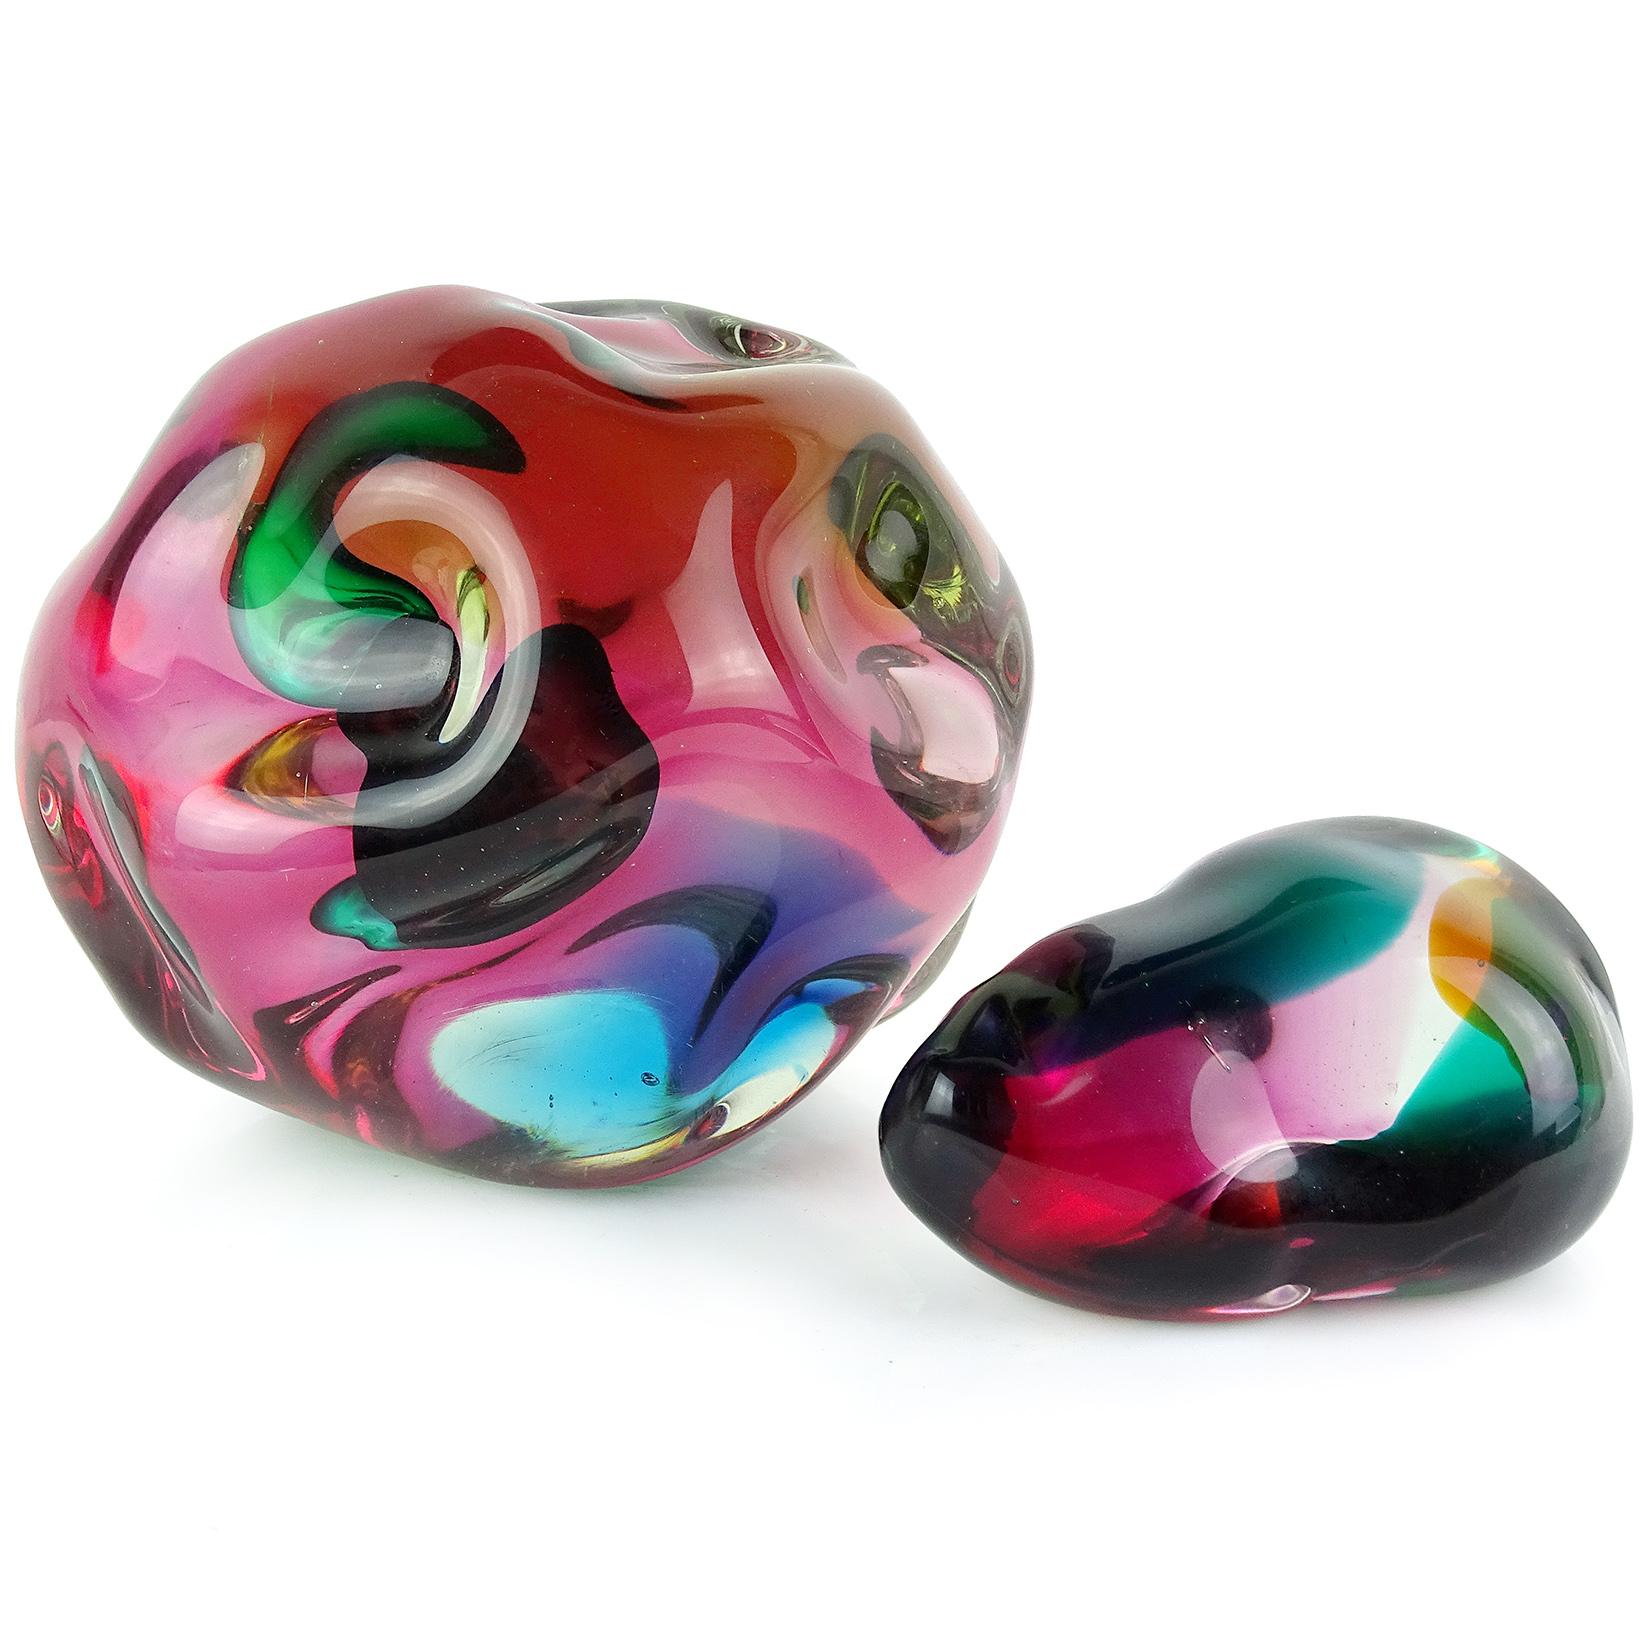 Salviati Gaspari Murano Multi-Color Biomorphic Rock Italian Art Glass Sculpture 1